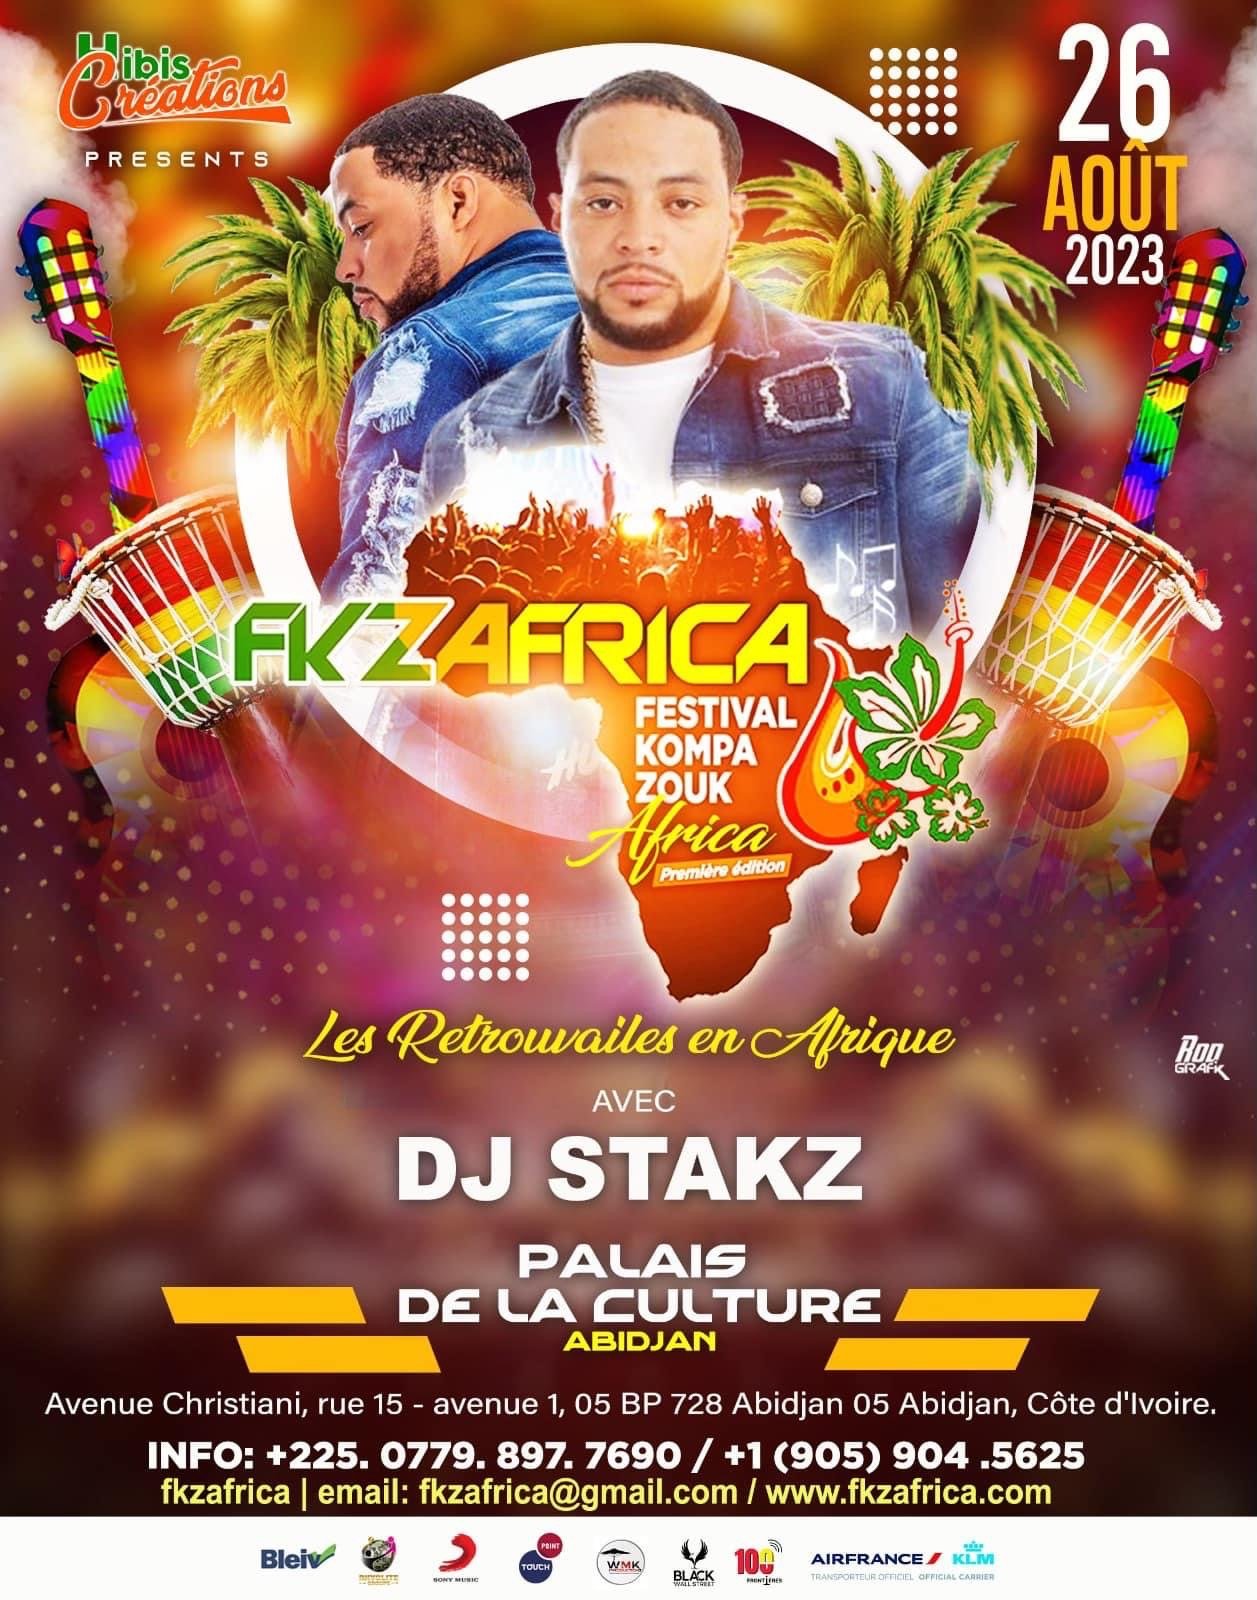 FKZ Africa Festival Kompa Zouk Africa - August 26.JPG